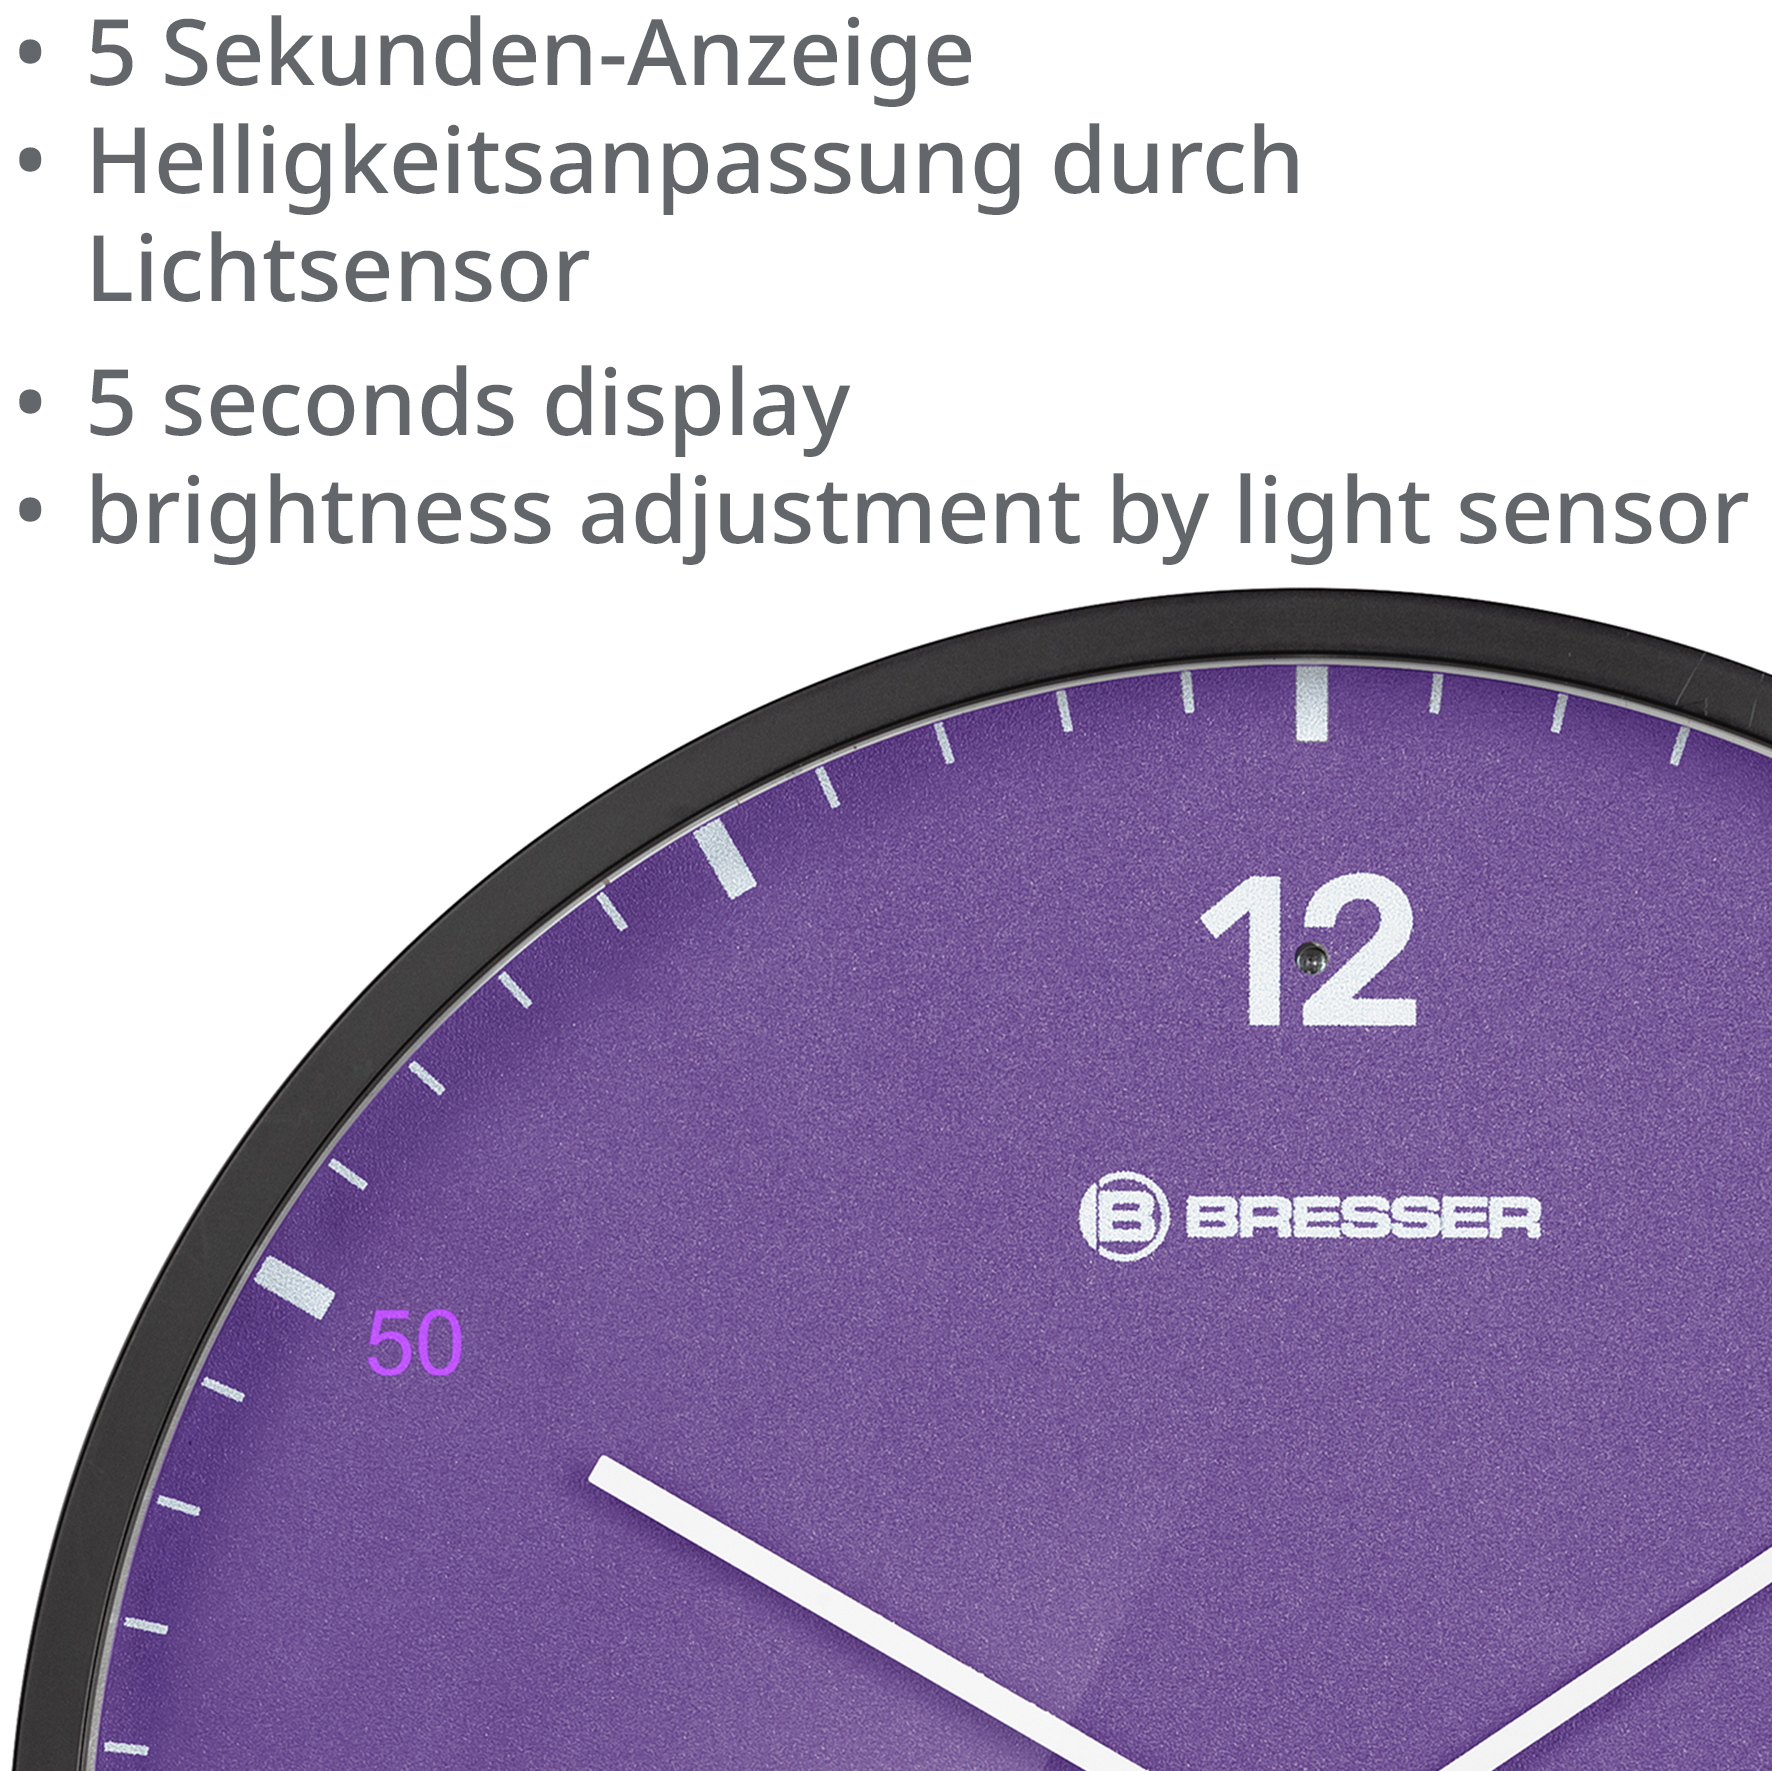 Orologio da parete BRESSER MyTime LEDsec da 24 cm con indicazione della temperatura